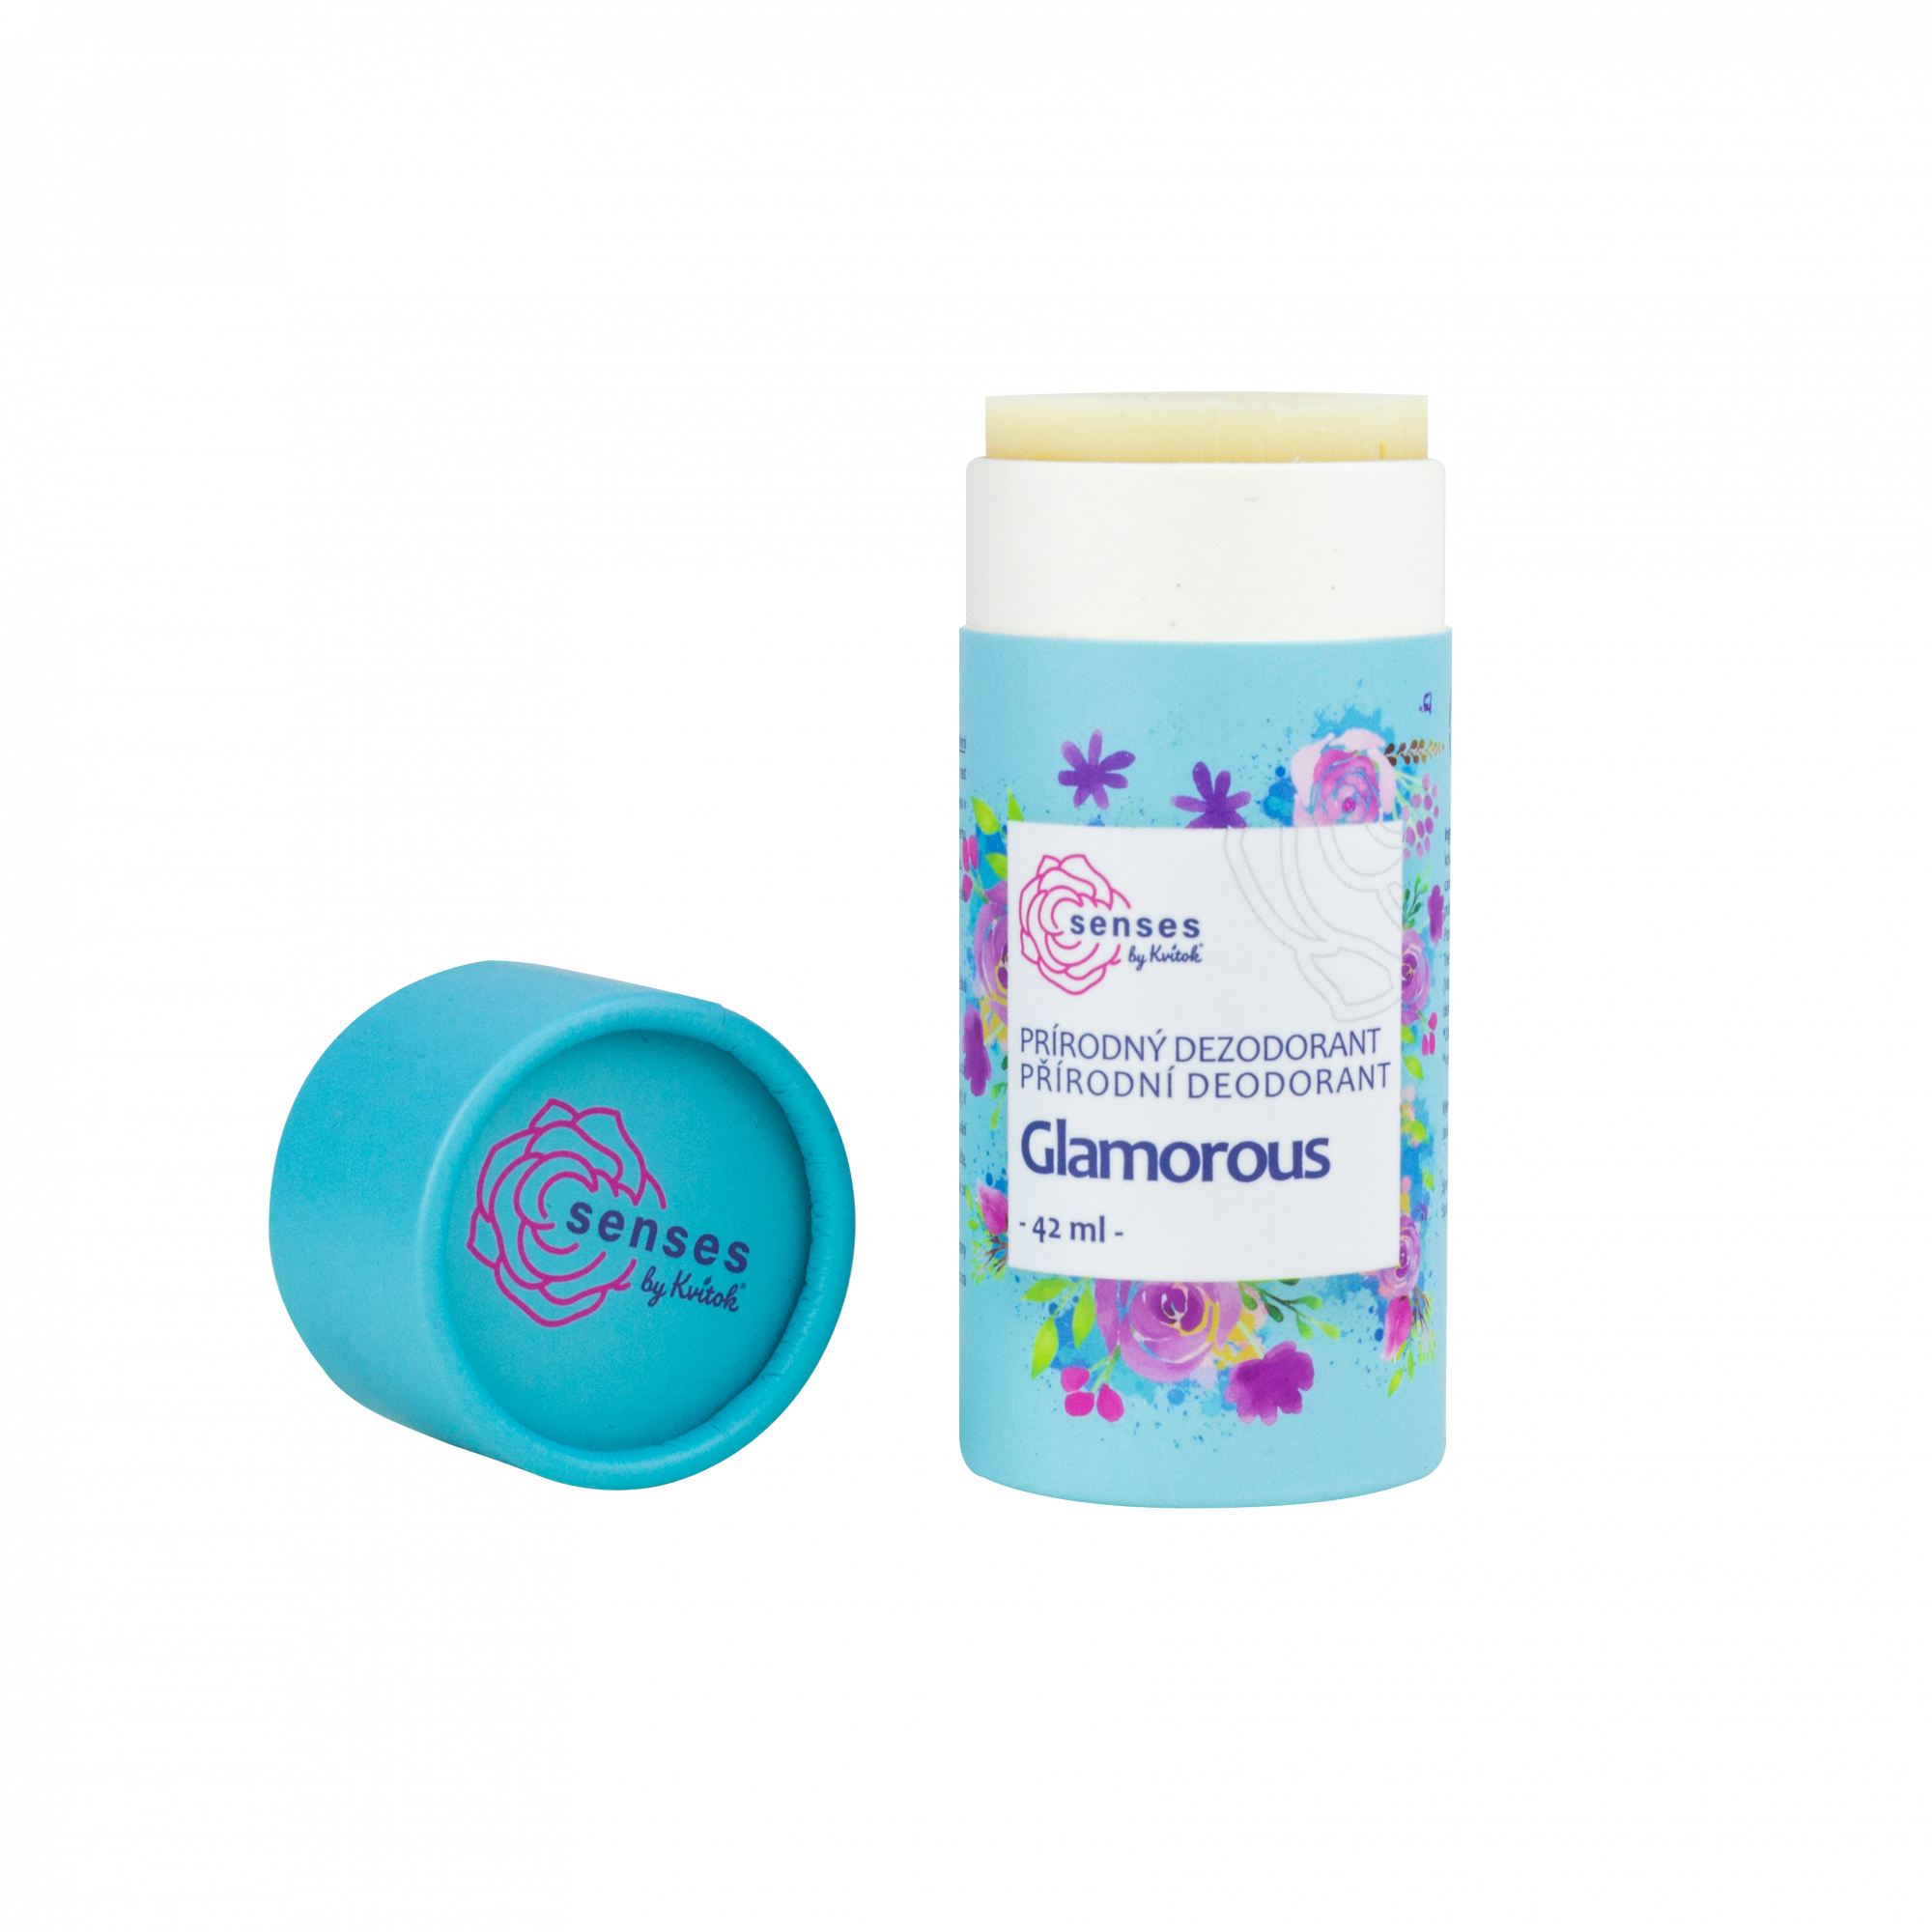 Kvitok Tuhý deodorant Glamorous (42 ml) - účinný až 24 hodin Kvitok